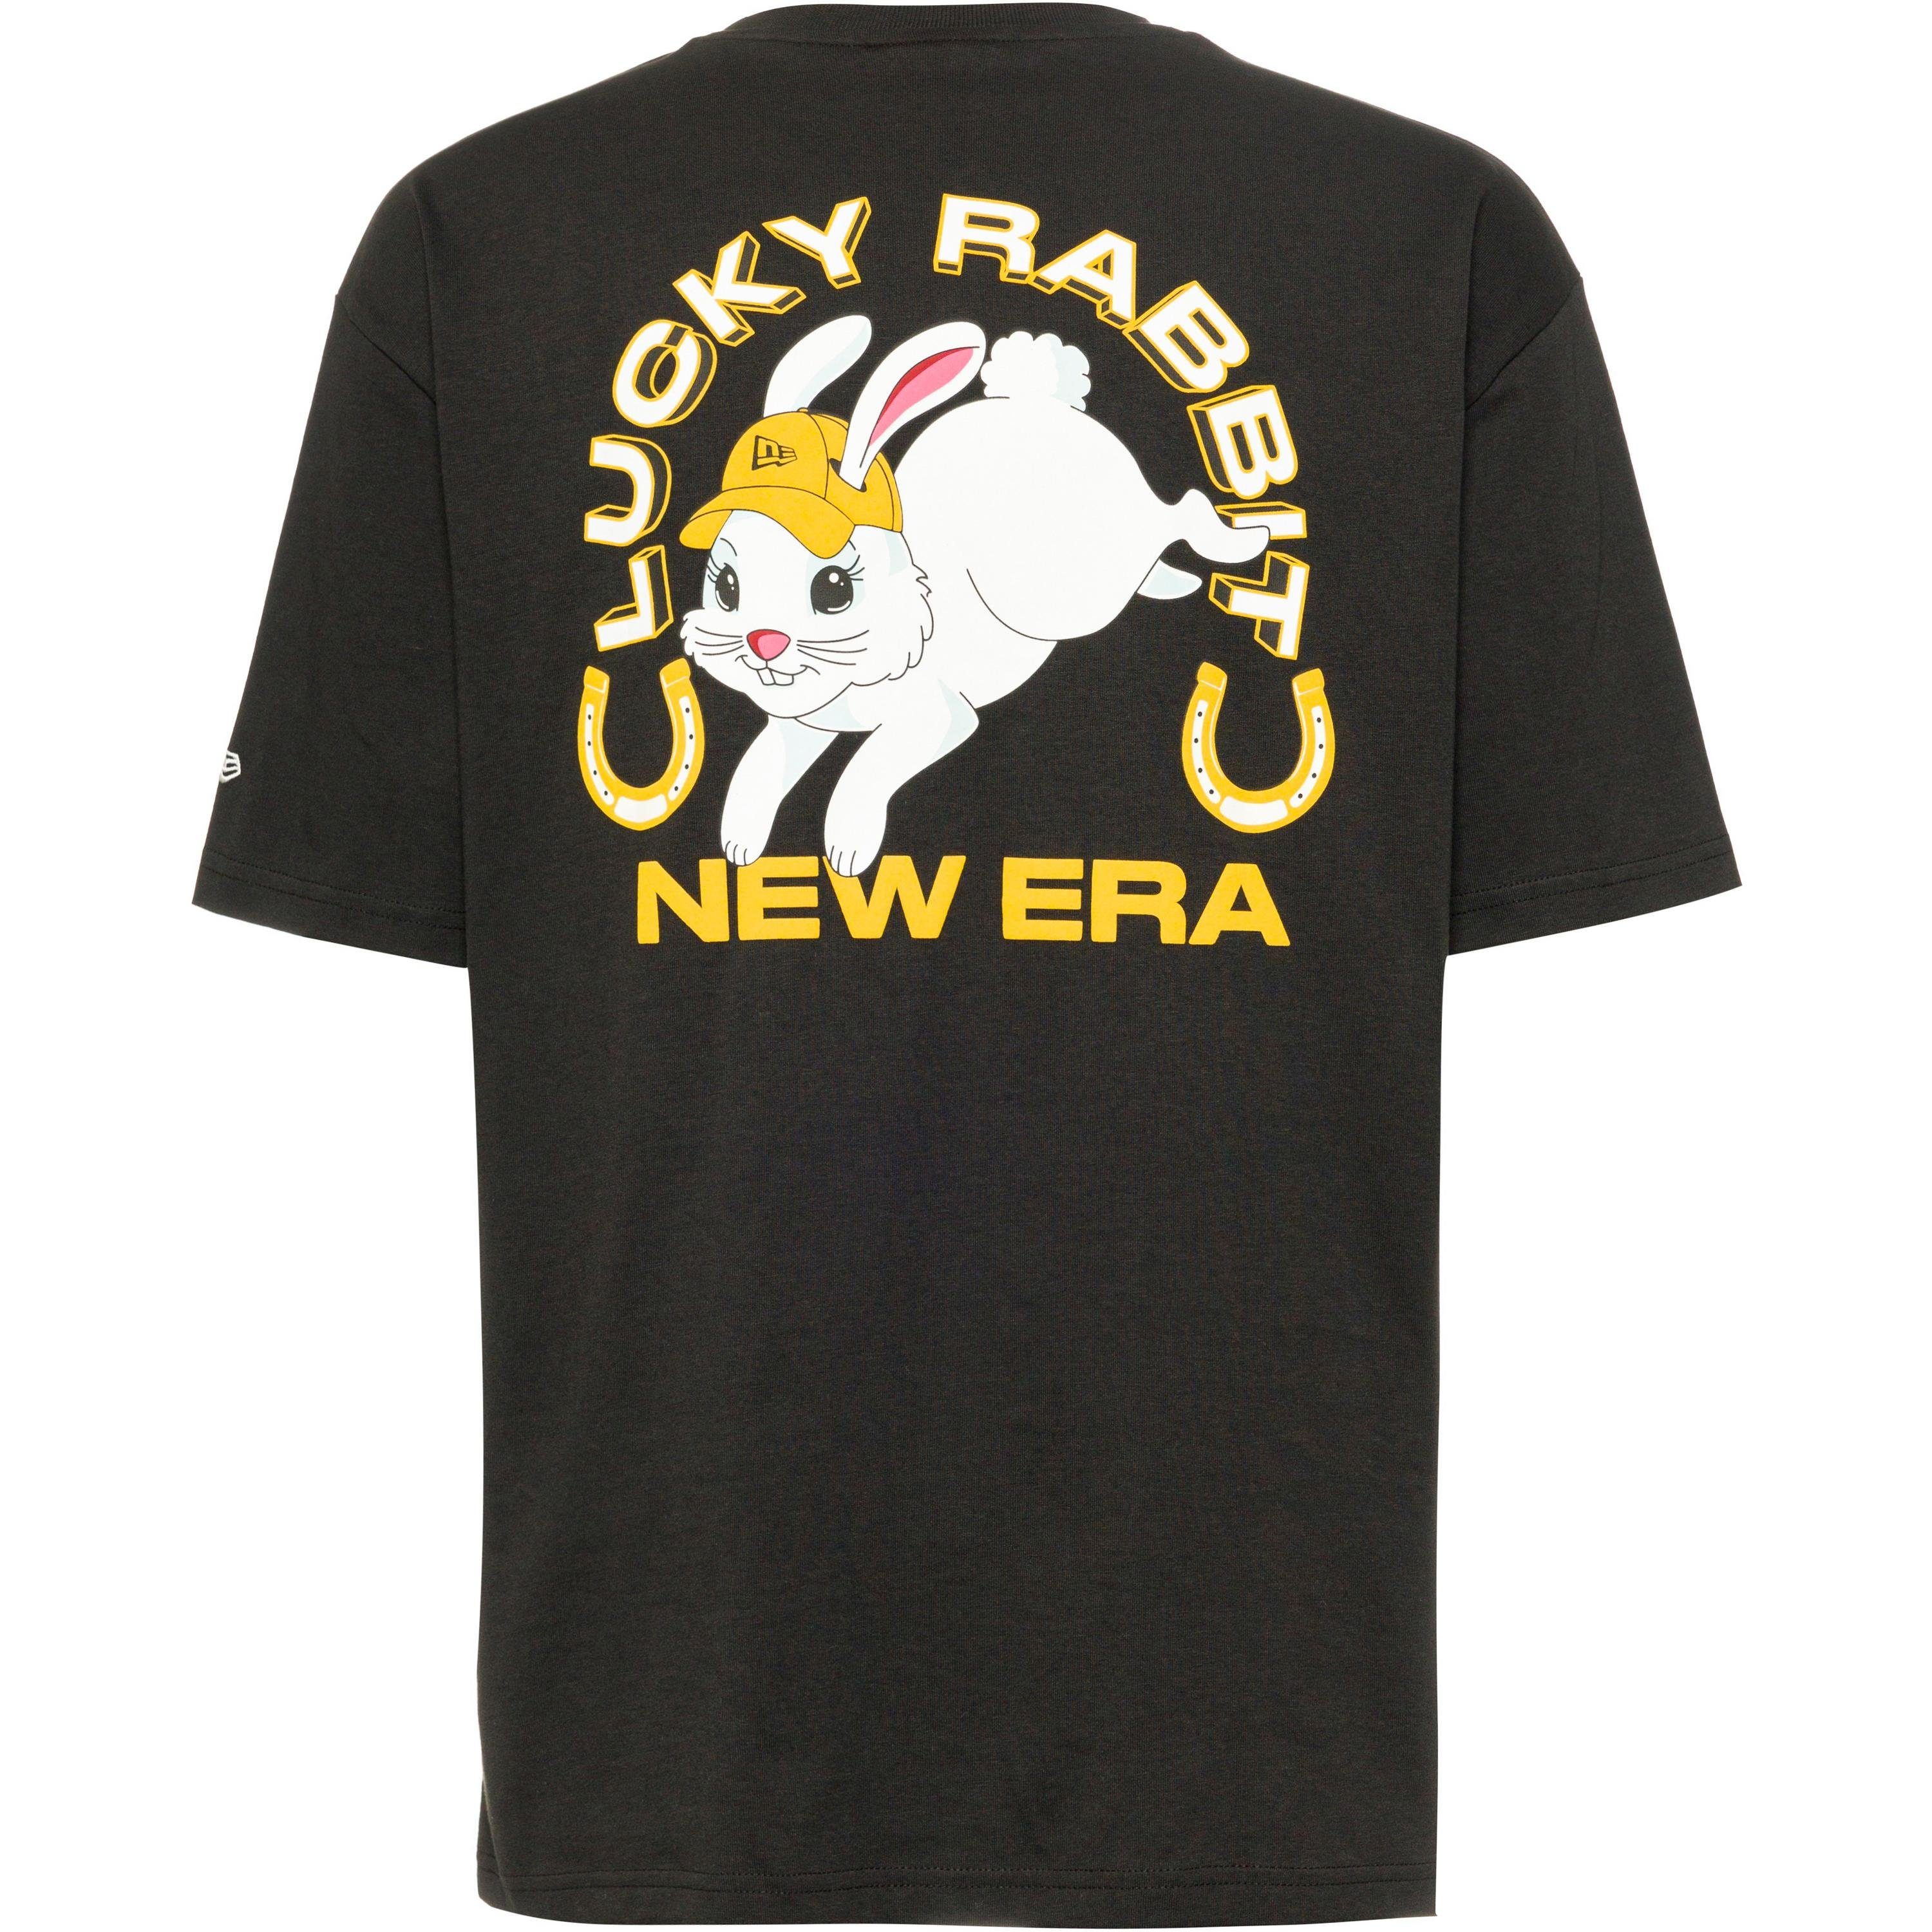 New Era T-Shirt Character Graphic